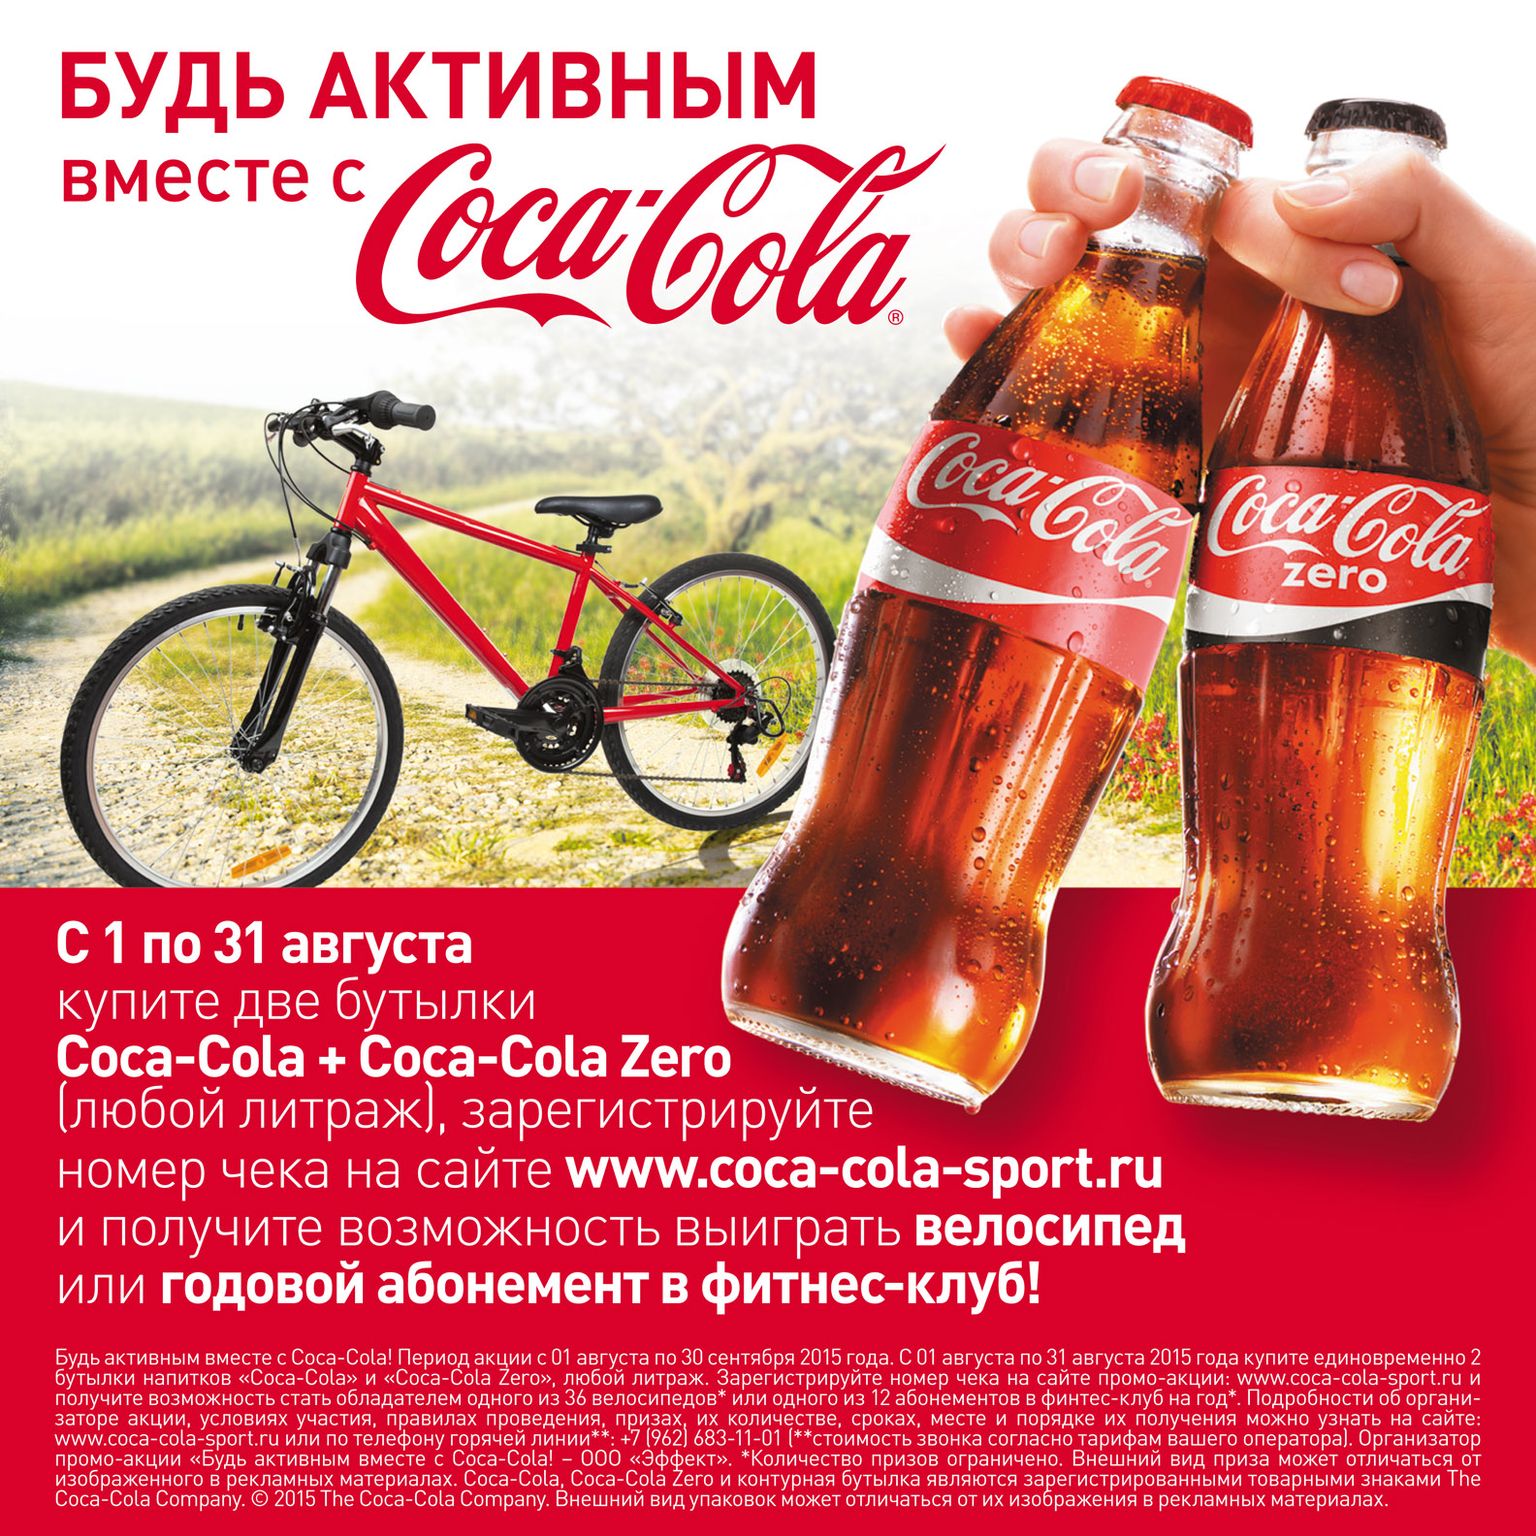 В Петербурге начали продавать кока-колу, сделанную на Украине - 16 сентября - конференц-зал-самара.рф